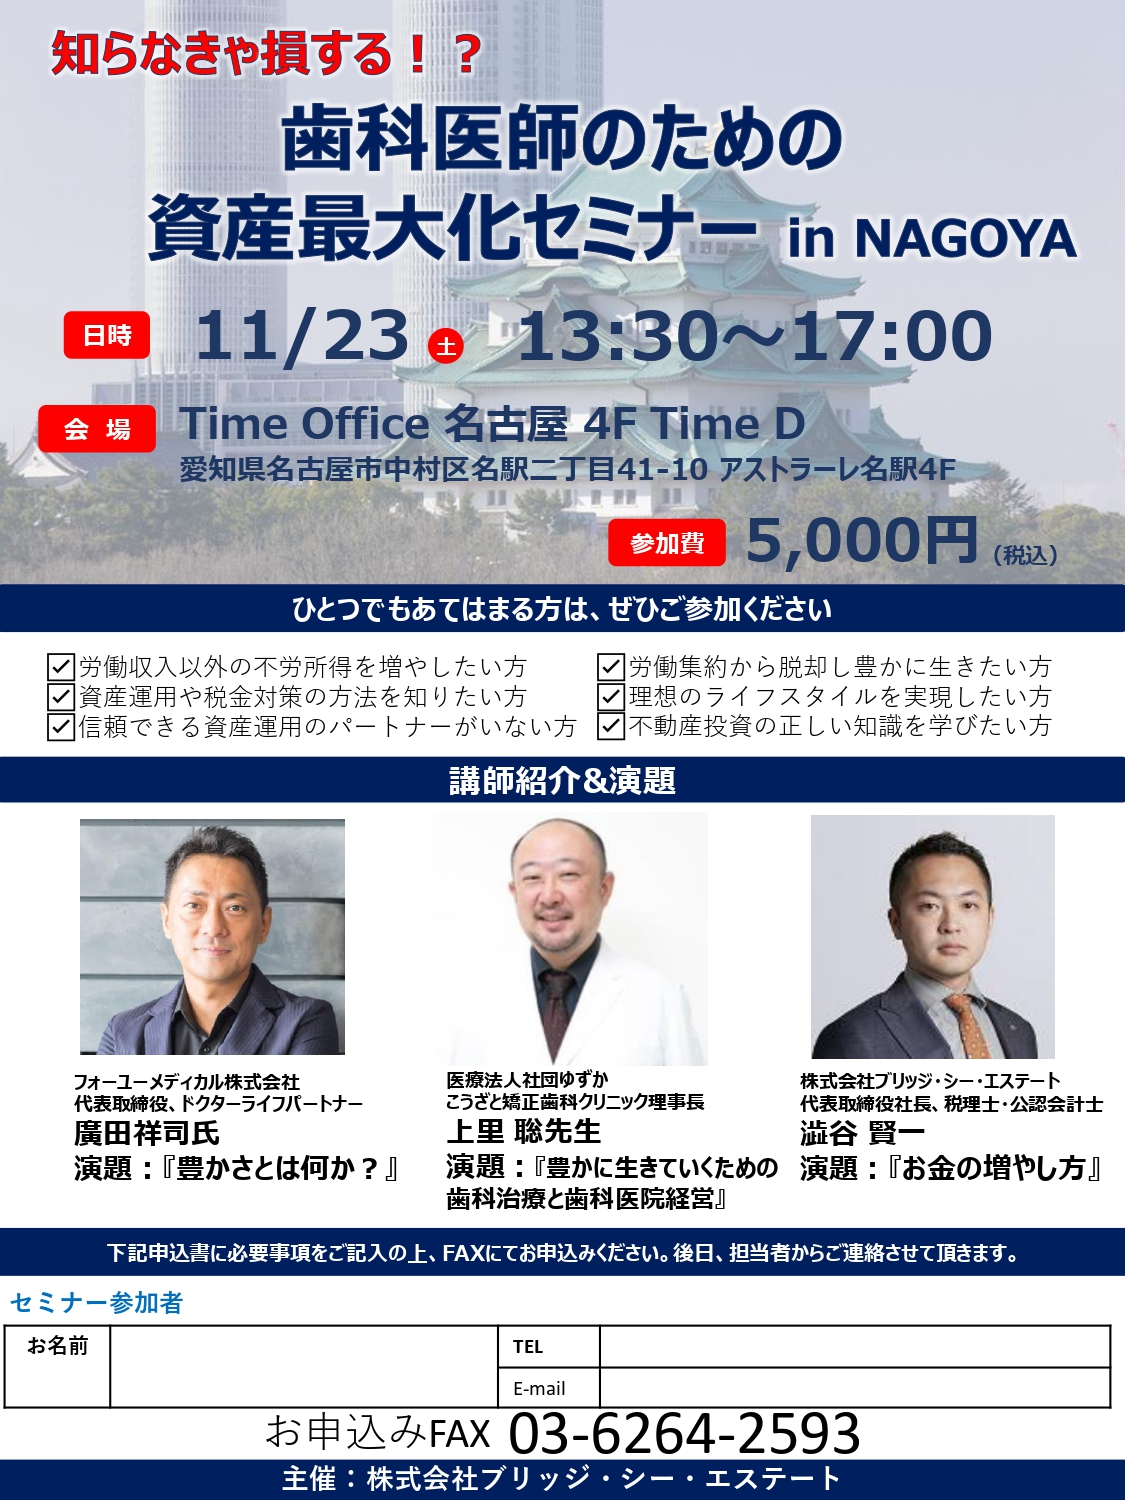 知らなきゃ損する 歯科医師のための資産最大化セミナー In Nagoya Doctorbook Academy